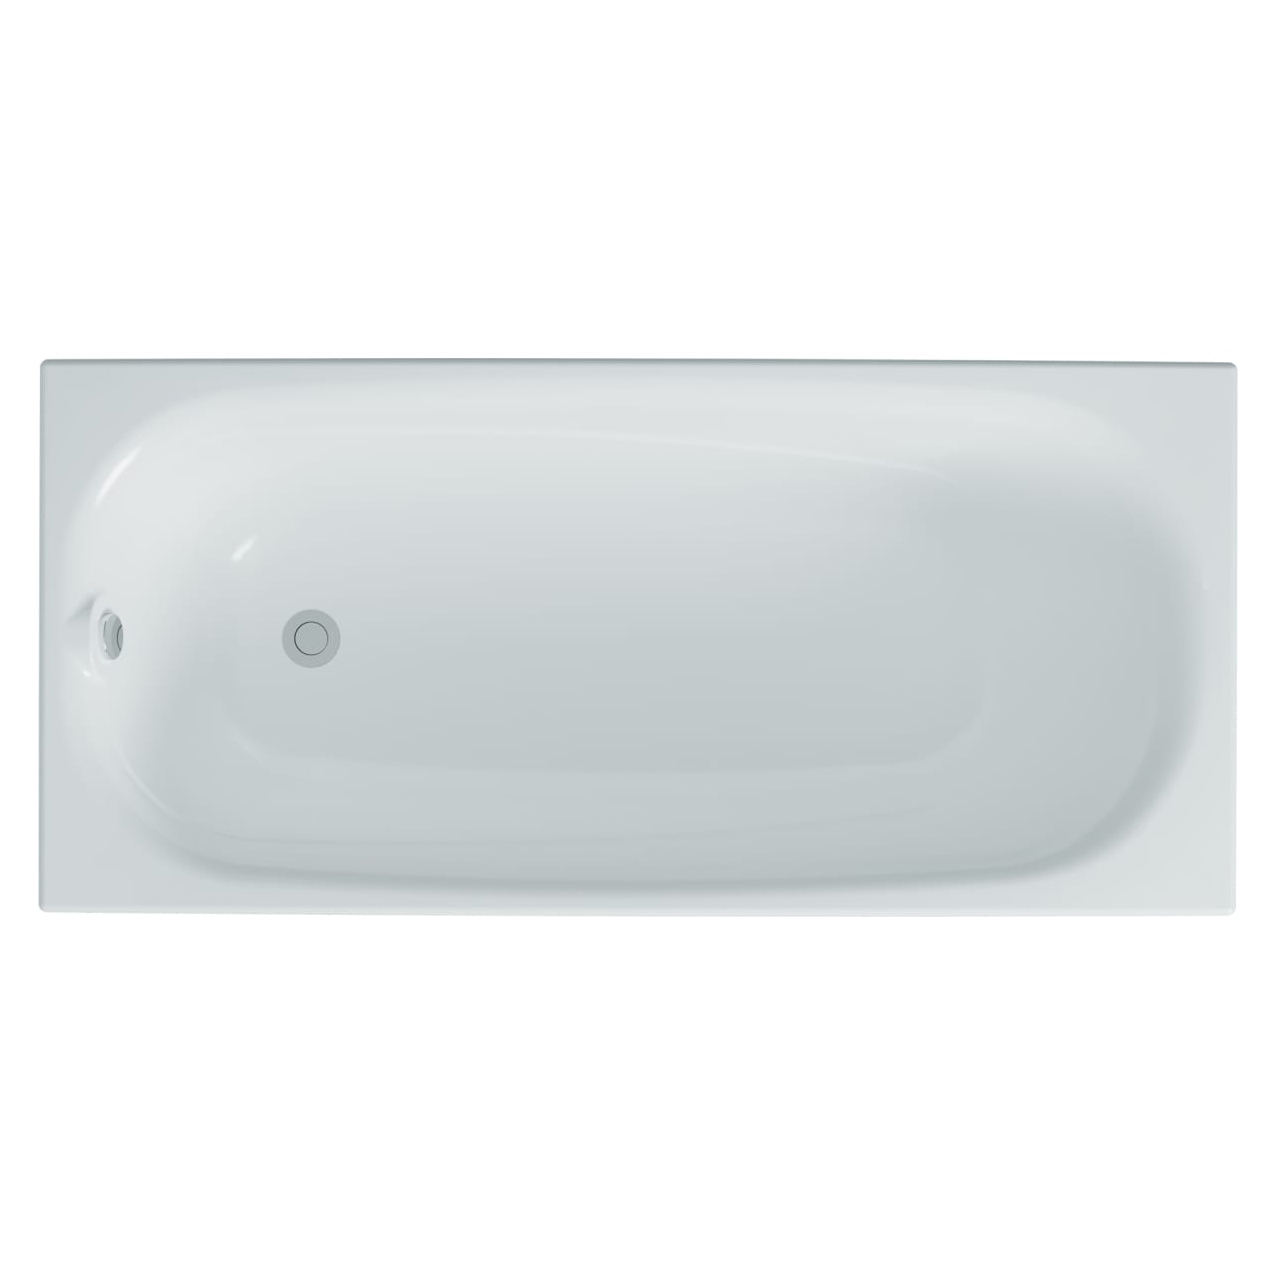 Акриловая ванна Тритон Европа 180, цвет белый Щ0000041839 - фото 1